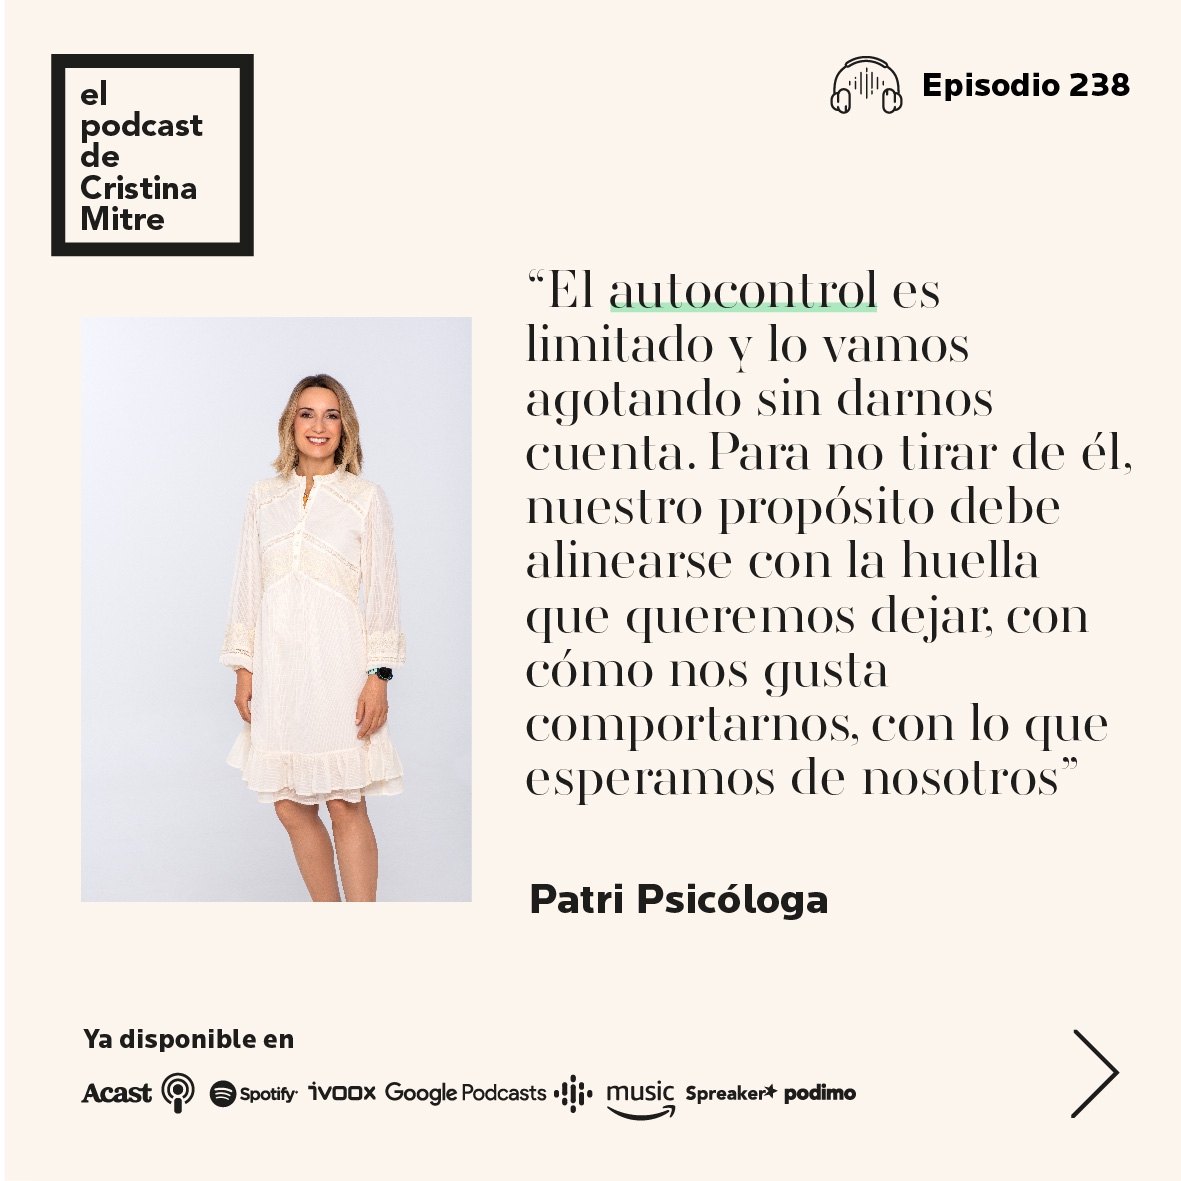 El podcast de Cristina Mitre Patri Psicologa Vida Serena